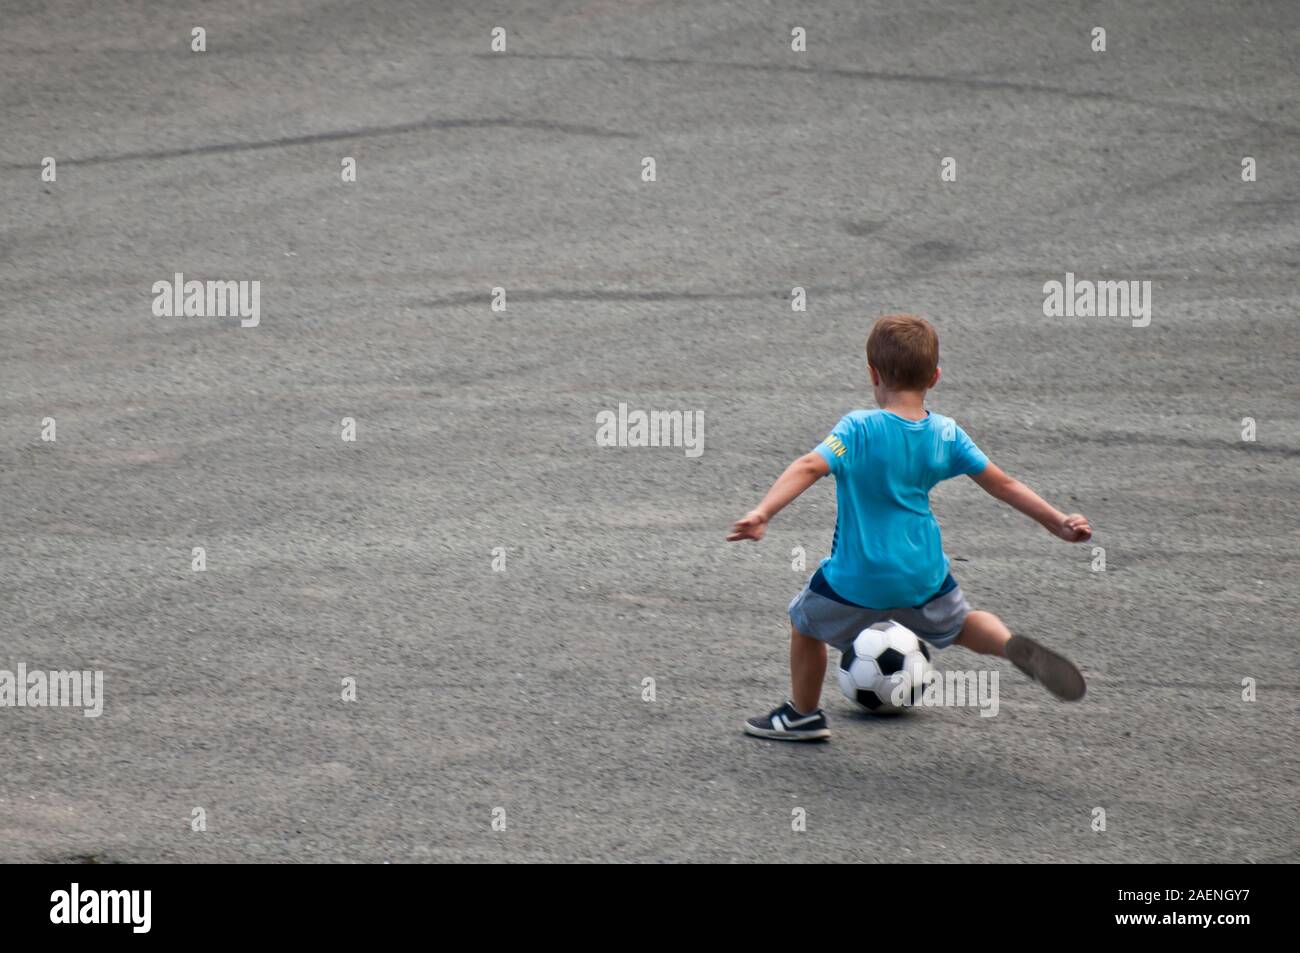 Enfant avec un tee-shirt bleu le tournage d'un ballon de soccer Banque D'Images